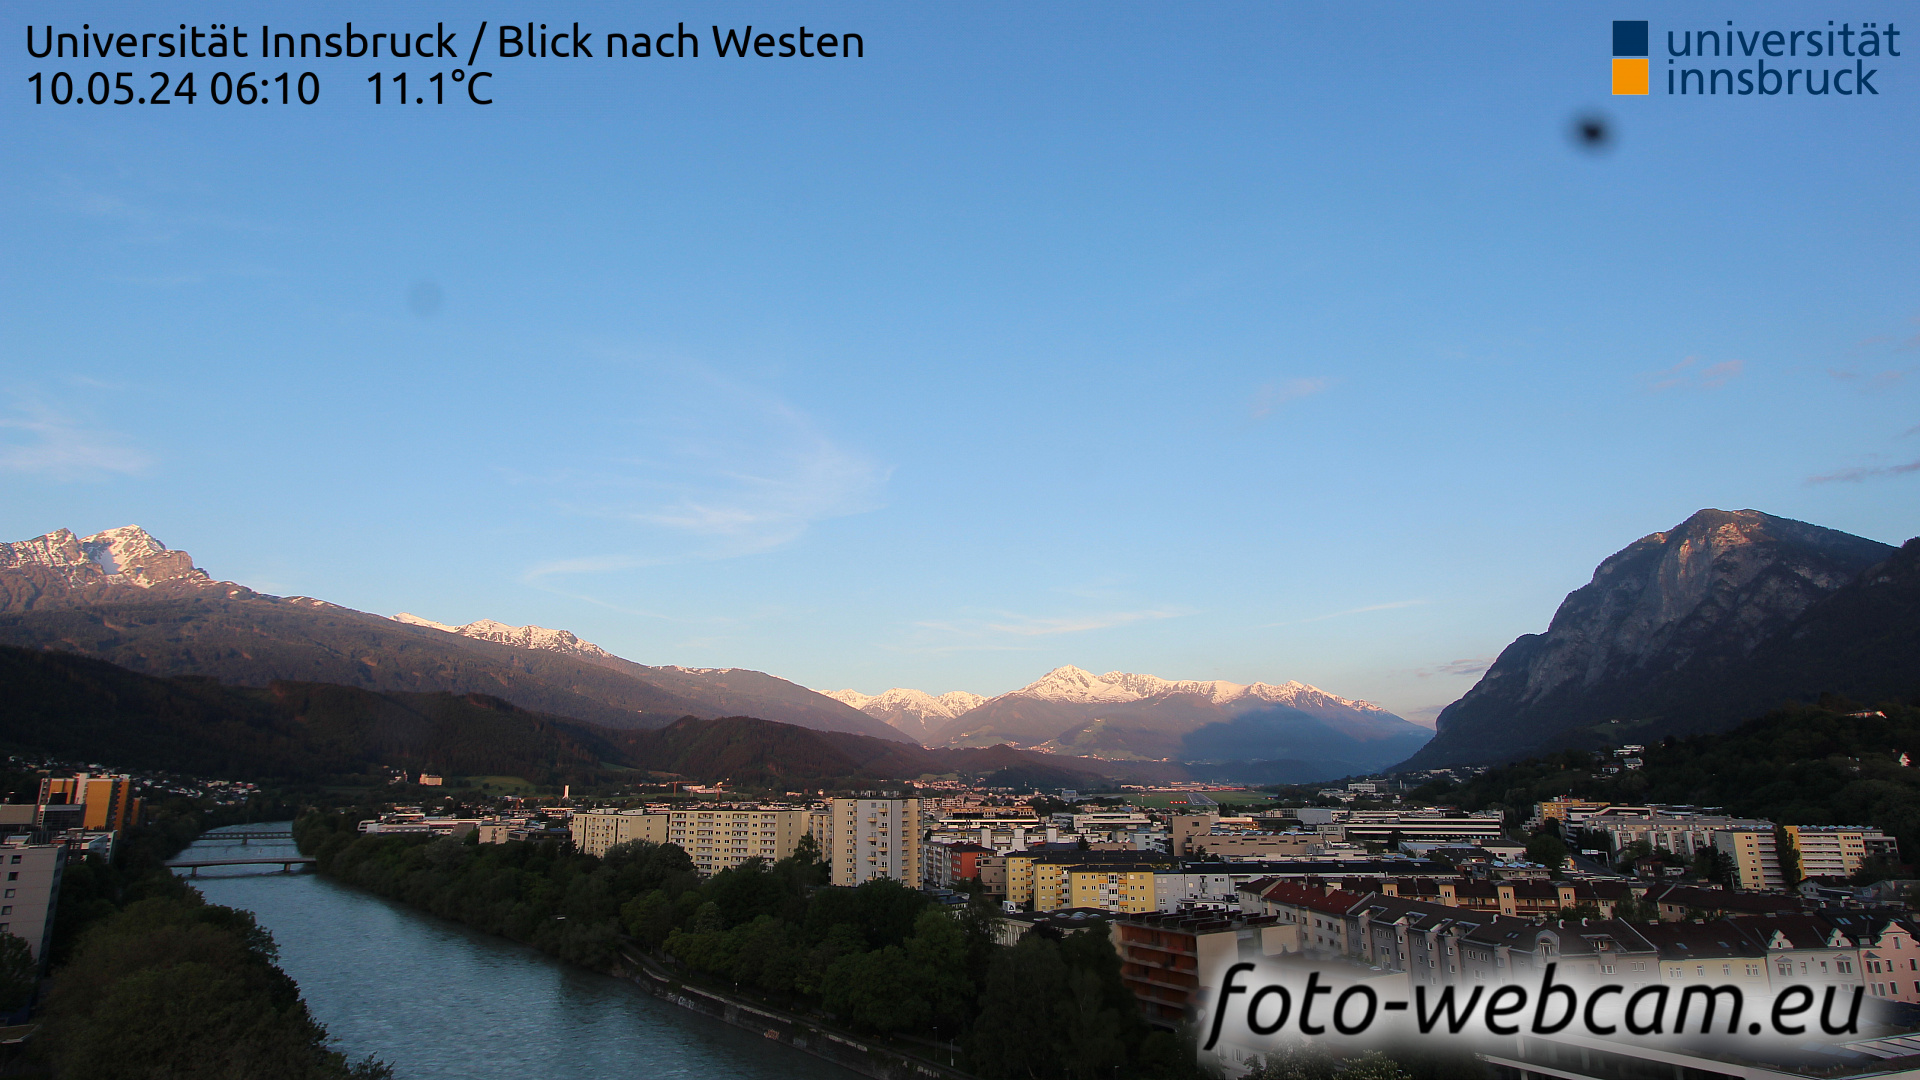 Innsbruck Thu. 06:17